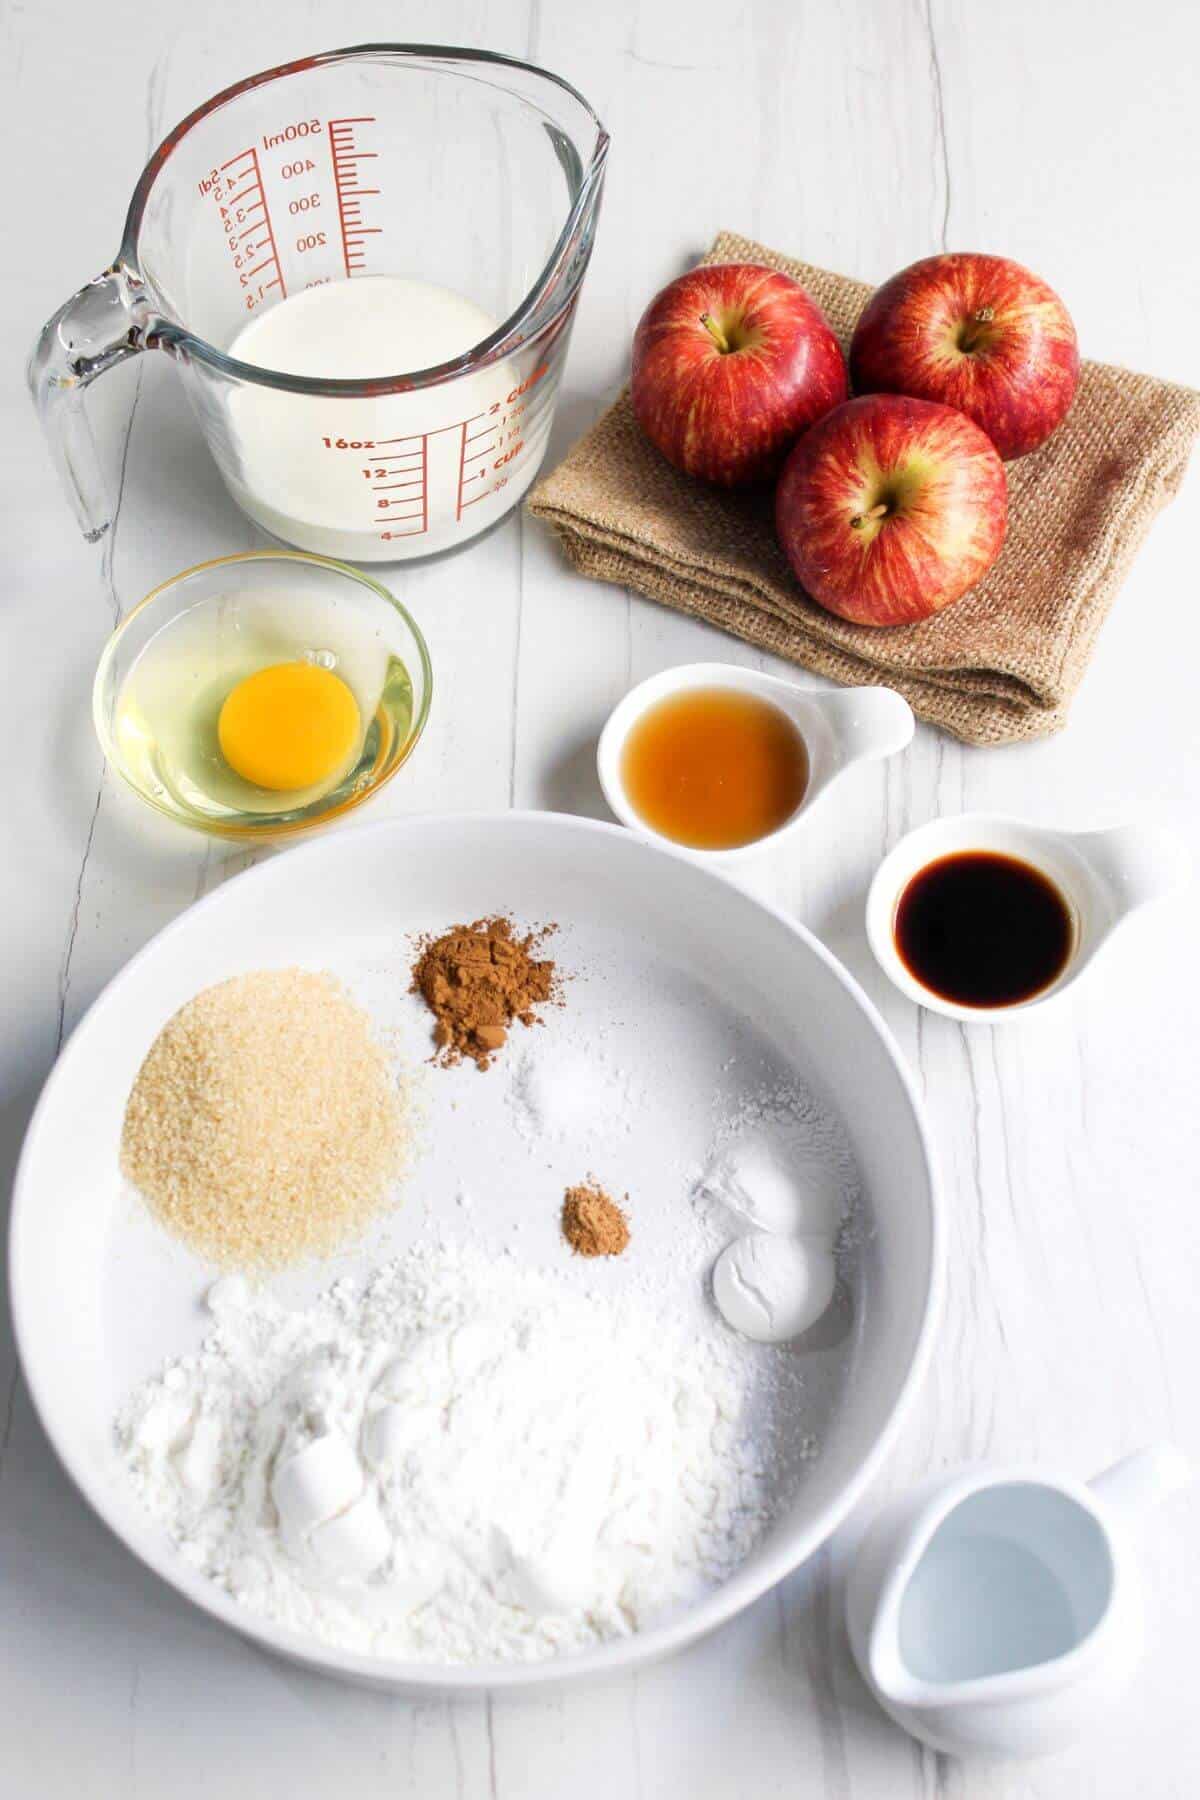 Ingredients for apple cinnamon pancakes.